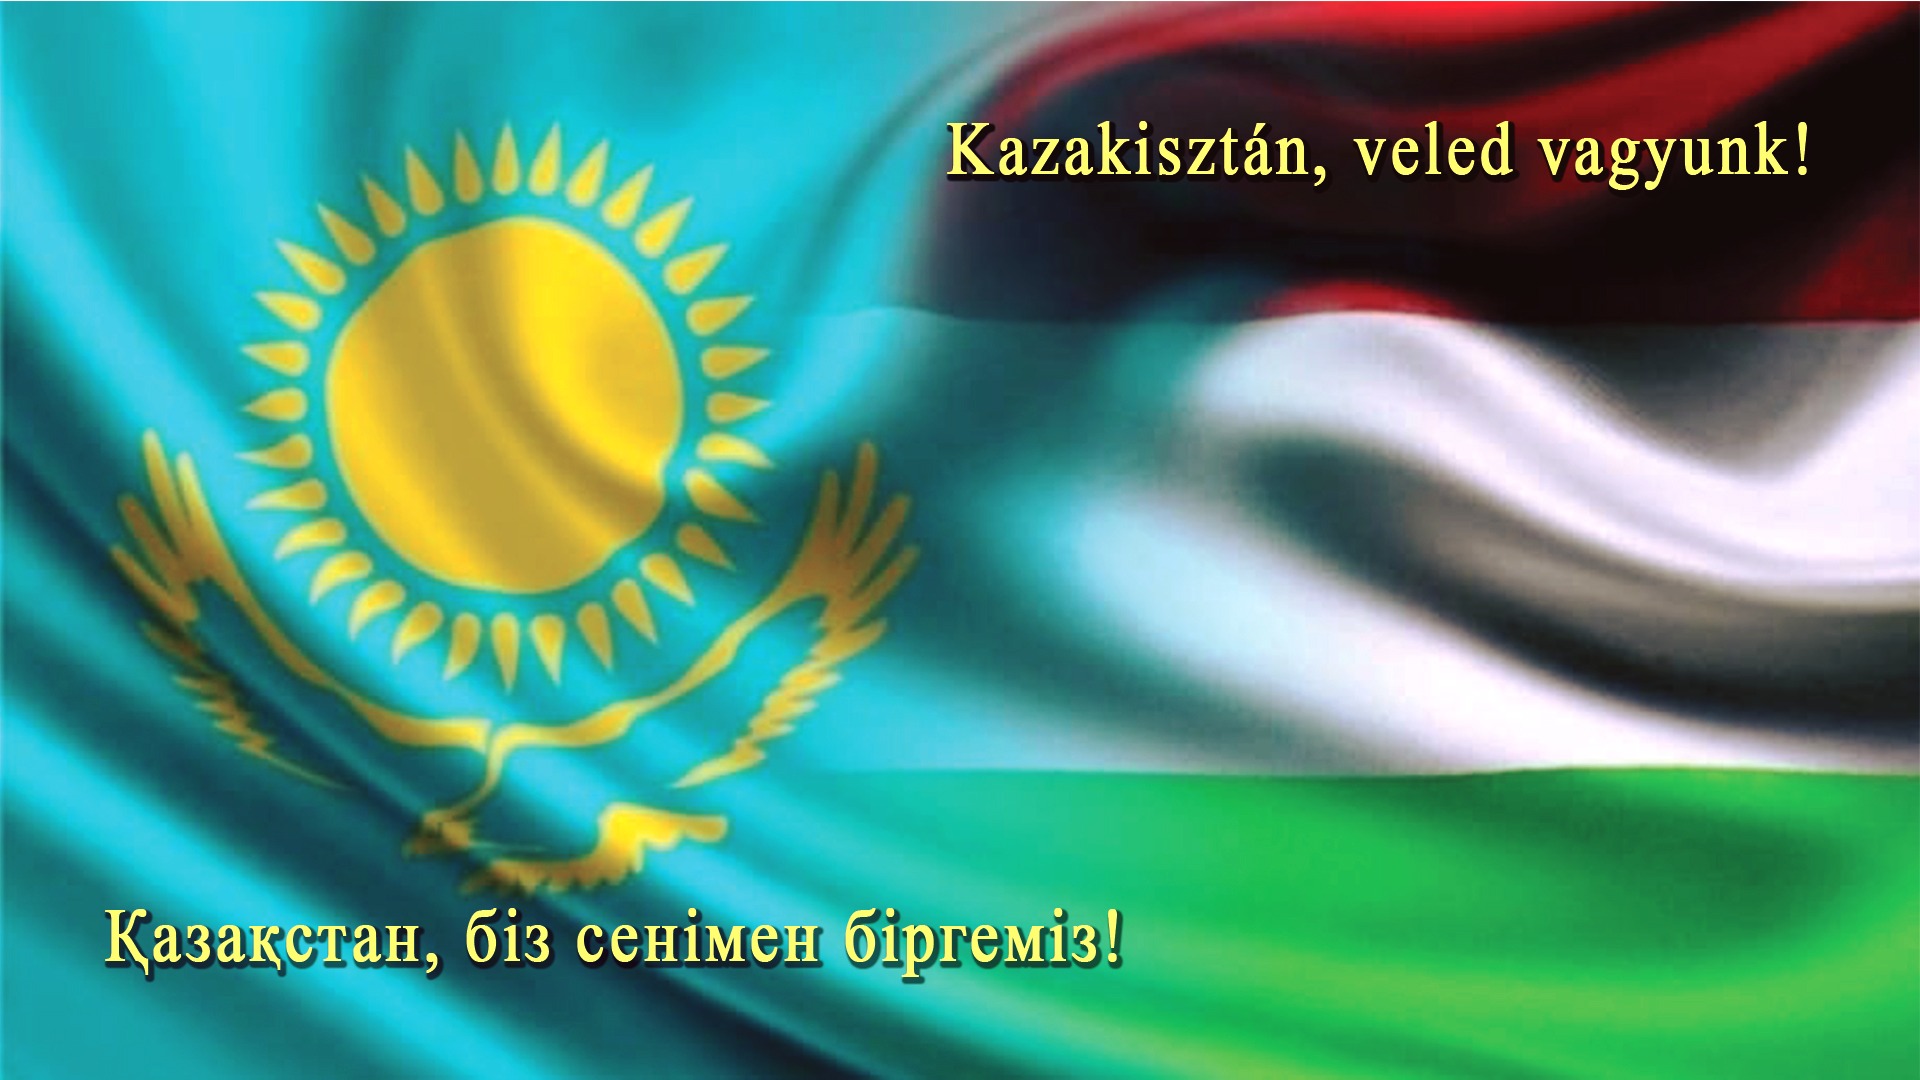 Kazak_magyar_sz